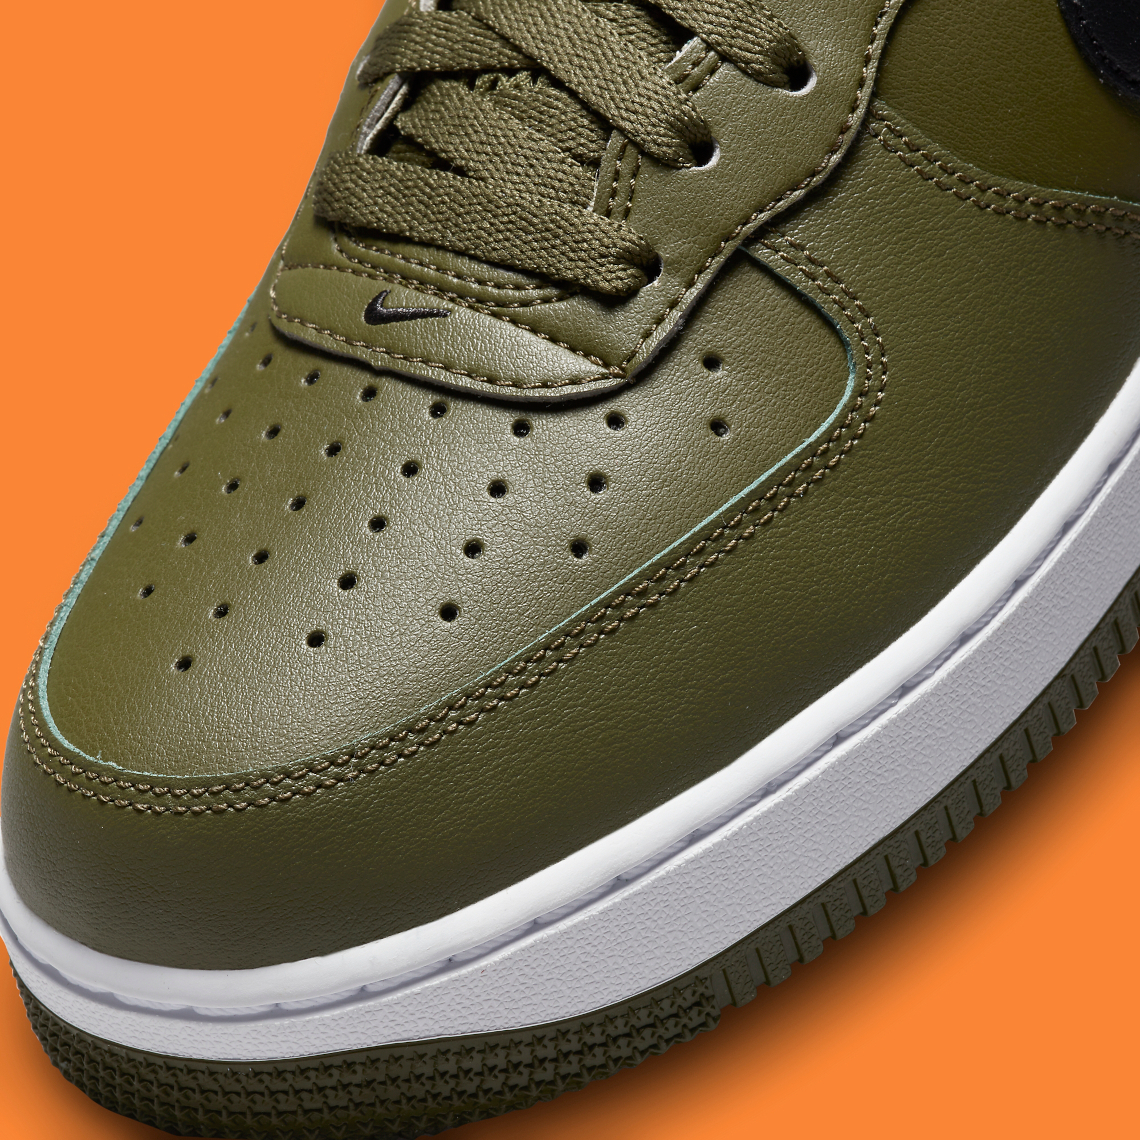 Dunk High "Spartan Green" sneakers Dh7453 300 7